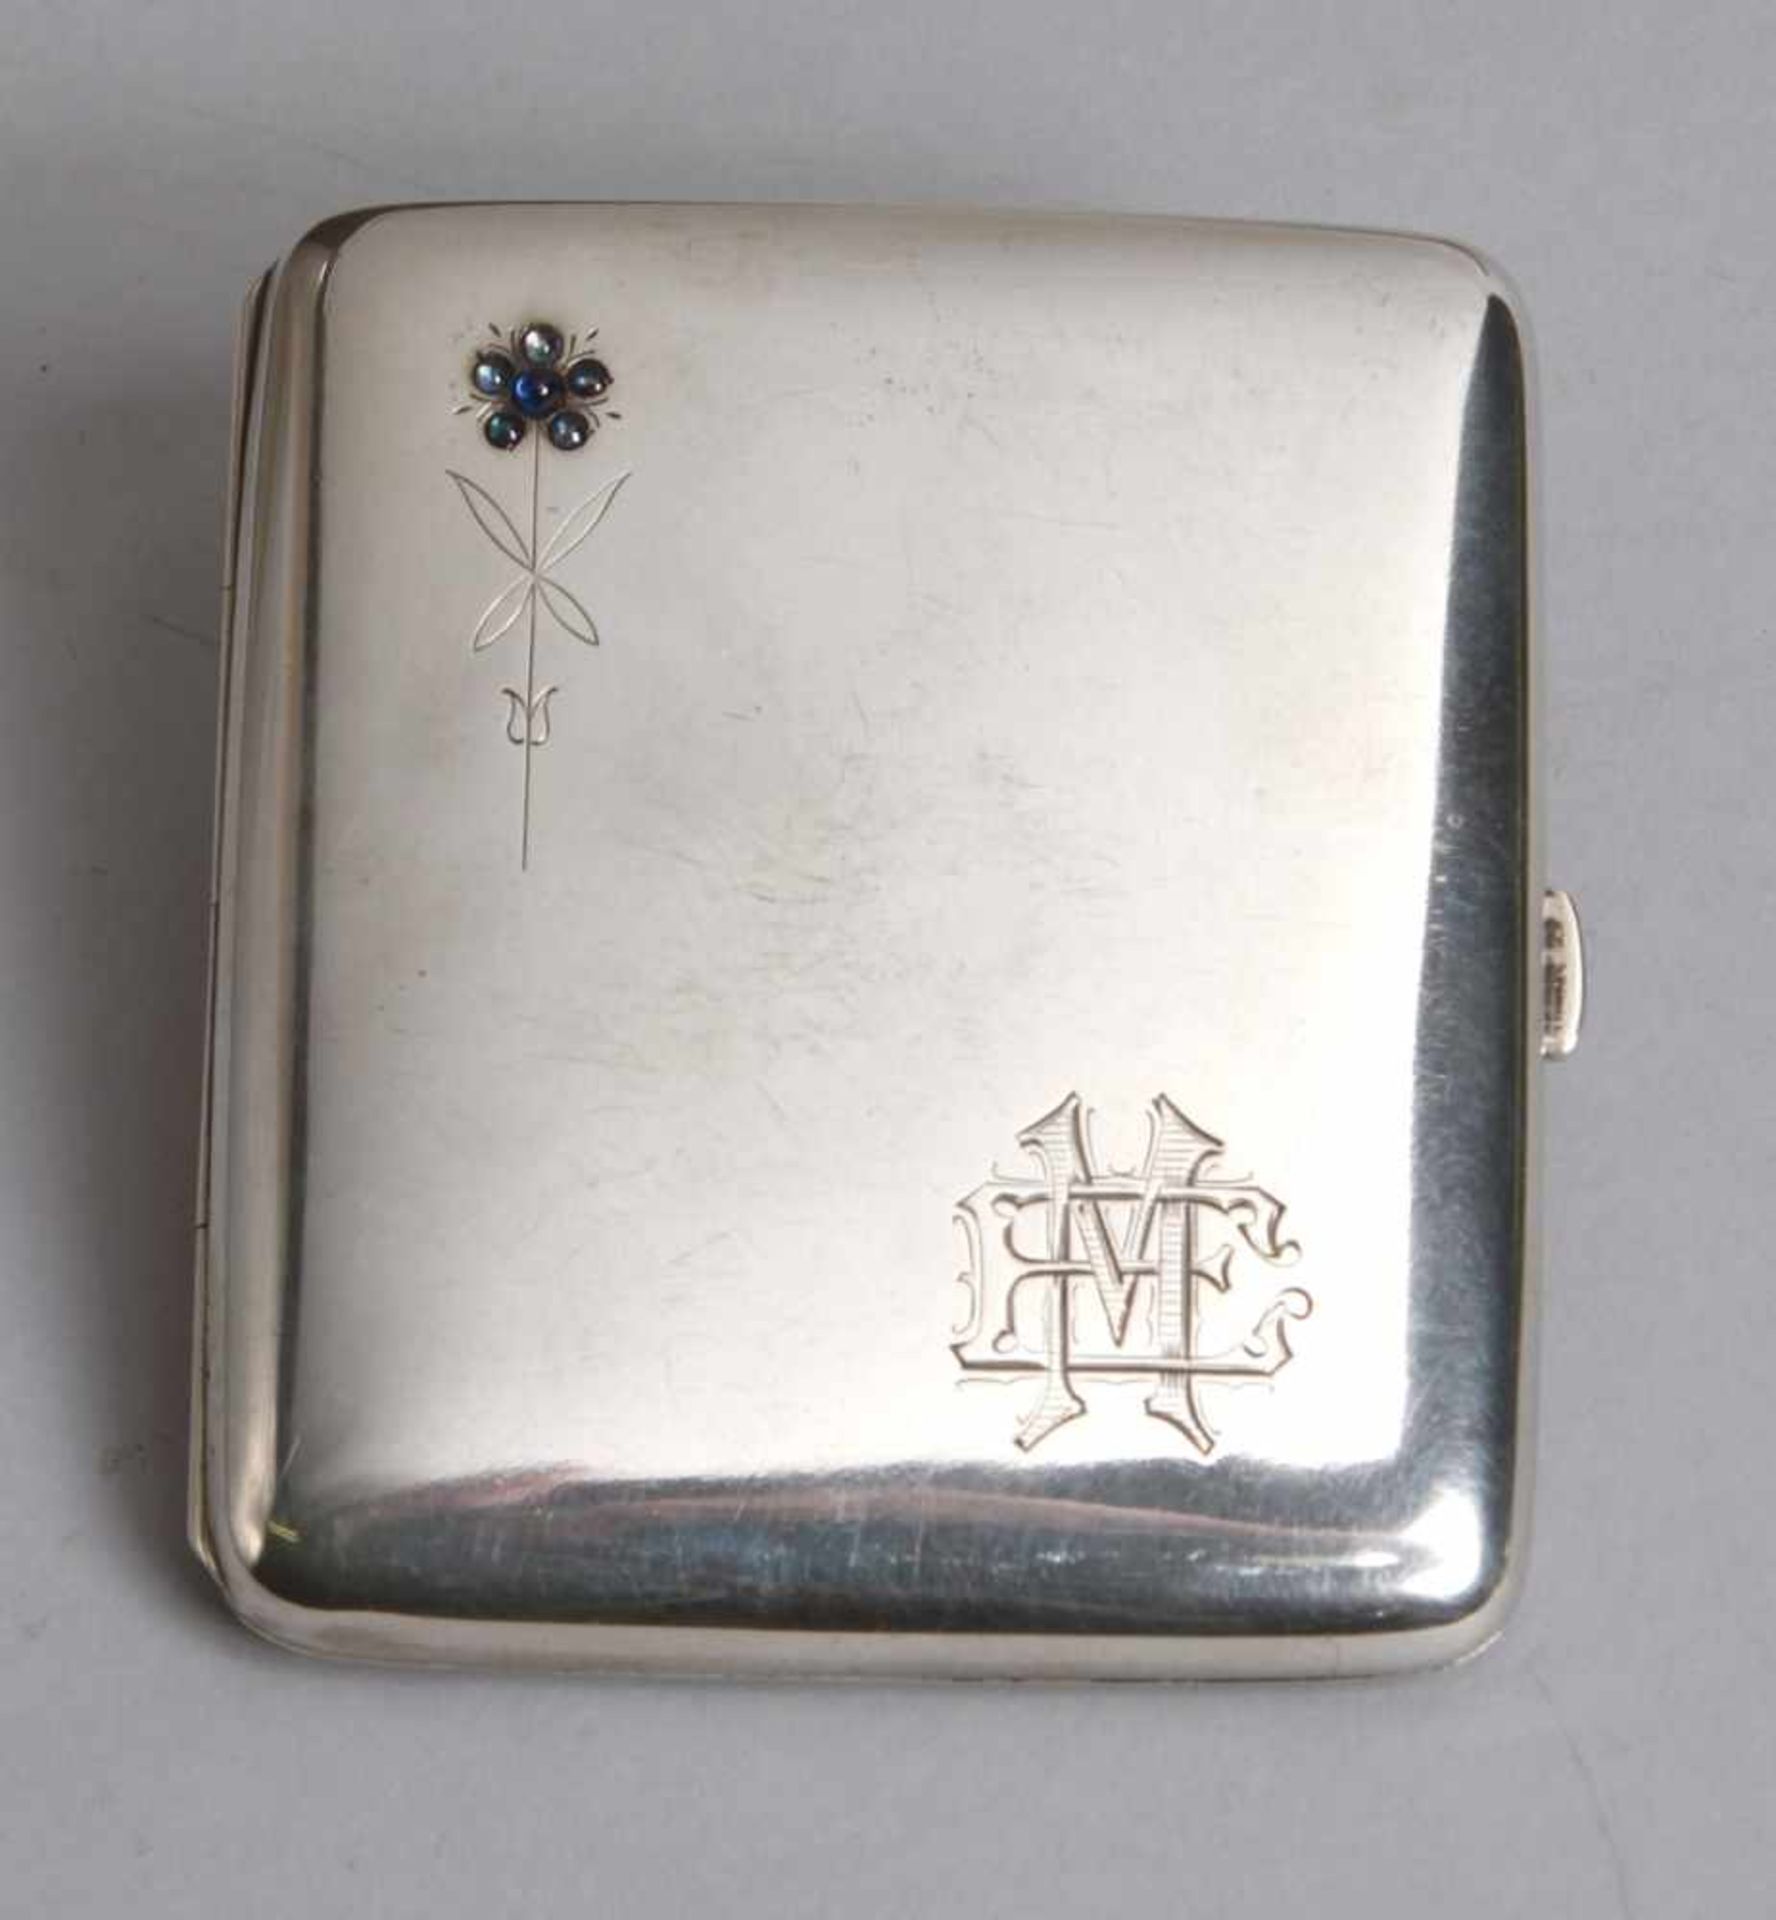 Zigaretten-Etui, dt., um 1910, Silber 800, rechteckig, scharnierter Deckel, Wandungverziert mit